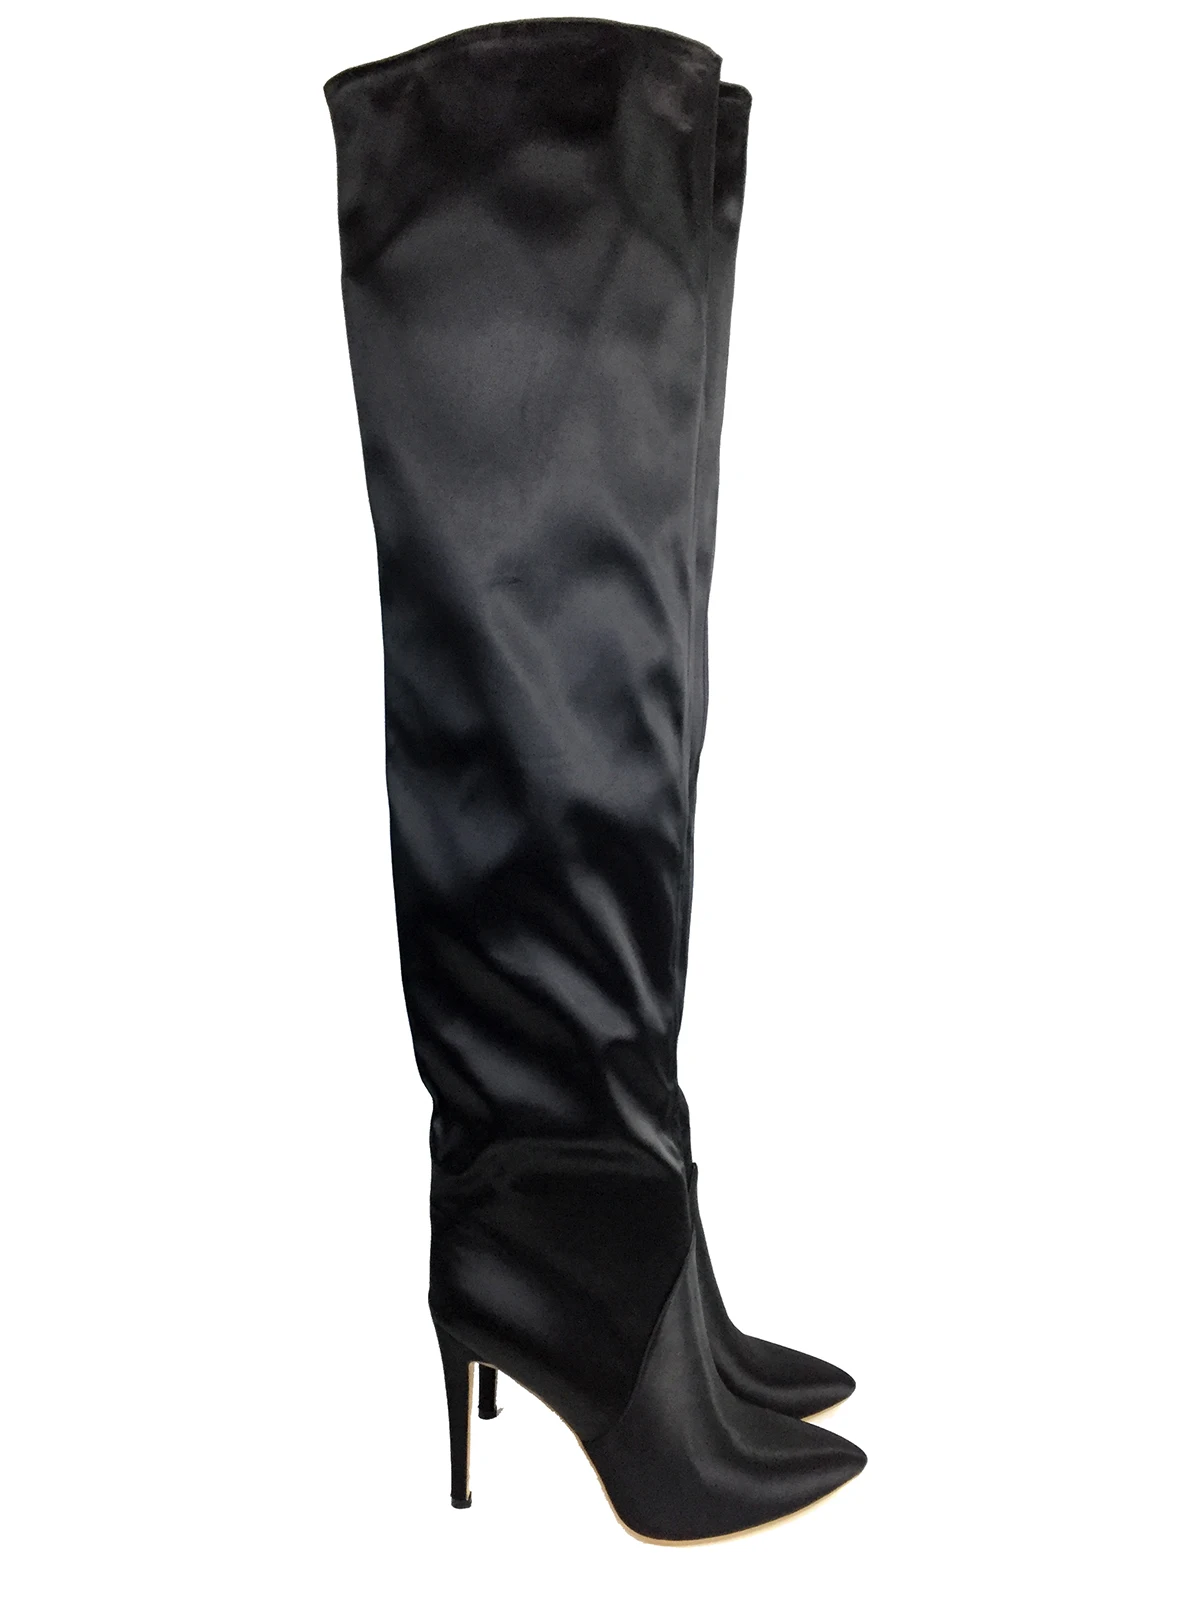 Женские сапоги выше колена с острым носком на высоком каблуке; зимние высокие сапоги до бедра; модная женская обувь черного цвета с атласным носком на молнии